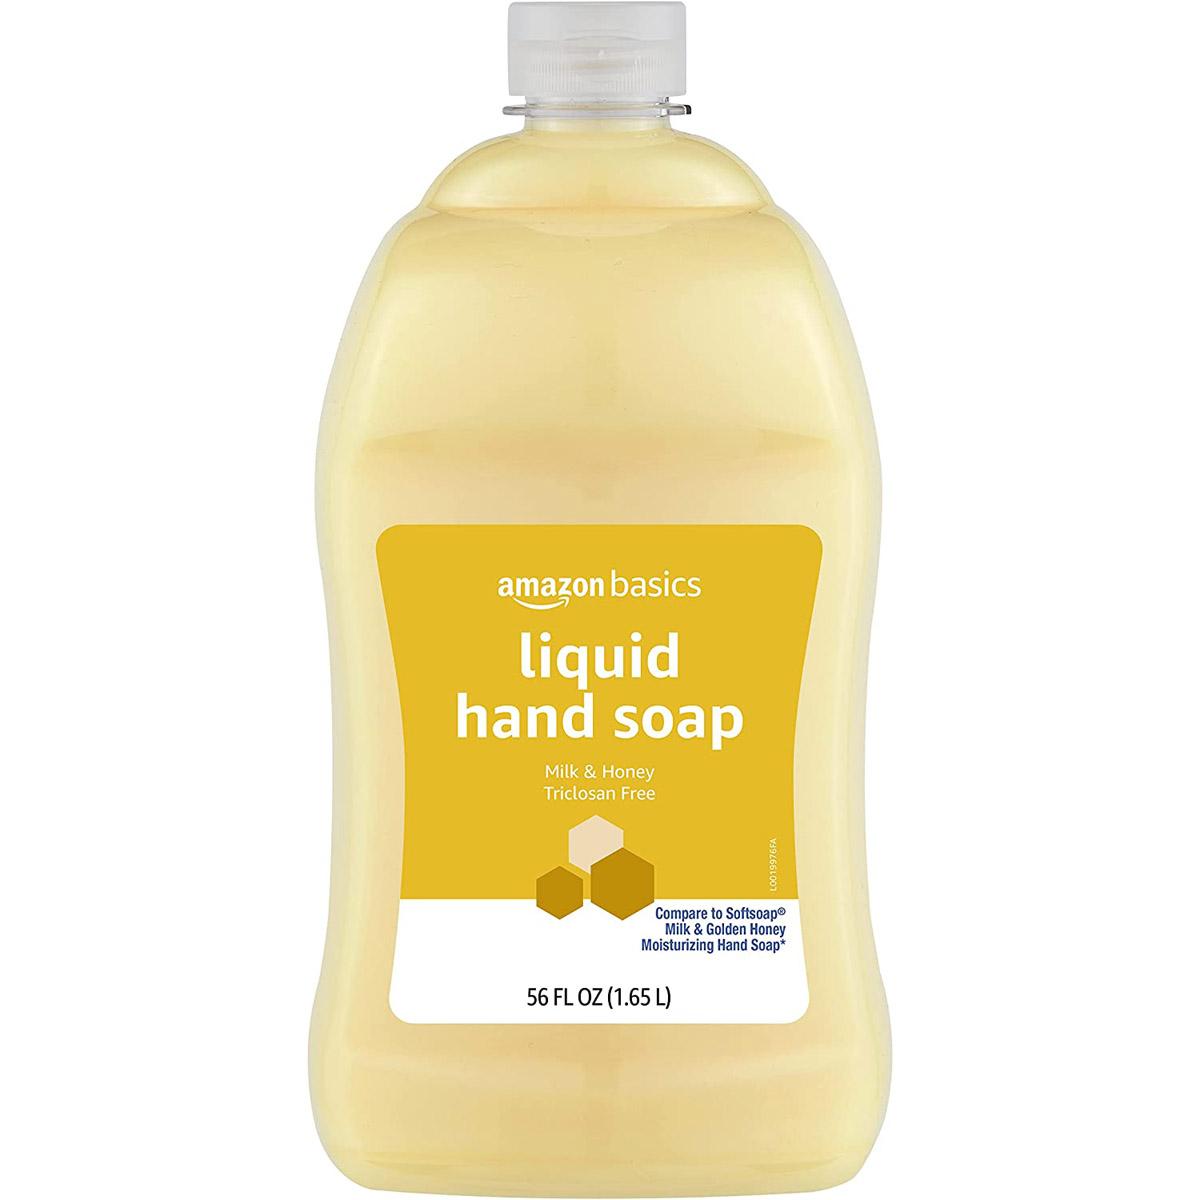 Amazon Basics Liquid Hand Soap Refill for $3.60 Shipped